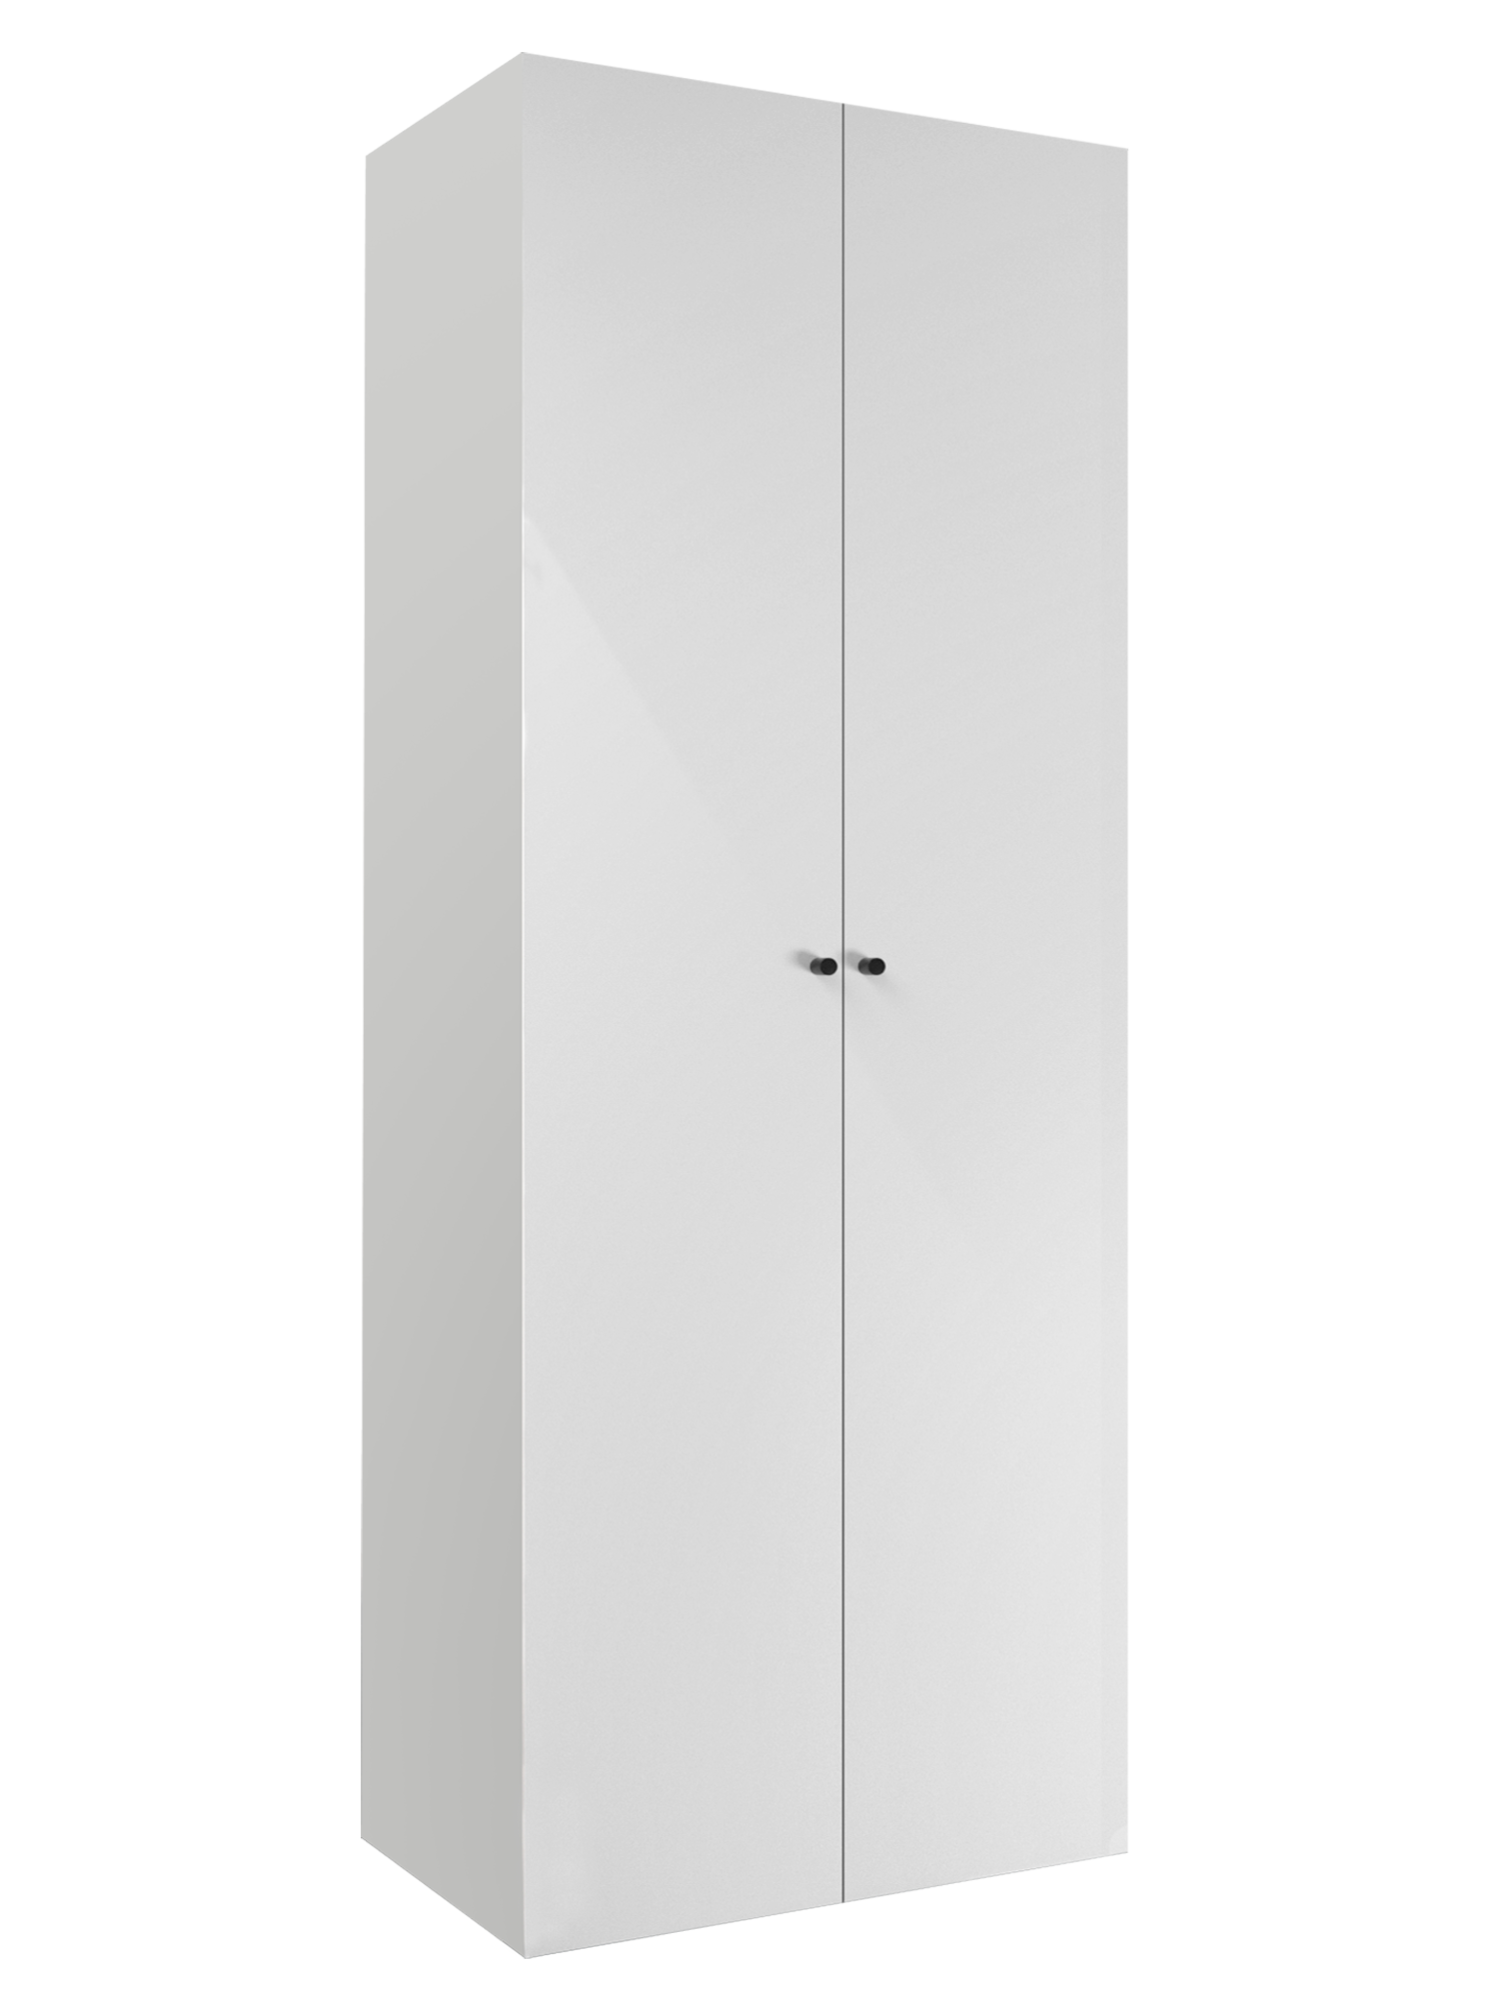 Armario blanco con puerta abatible spaceo de 240x120x60cm